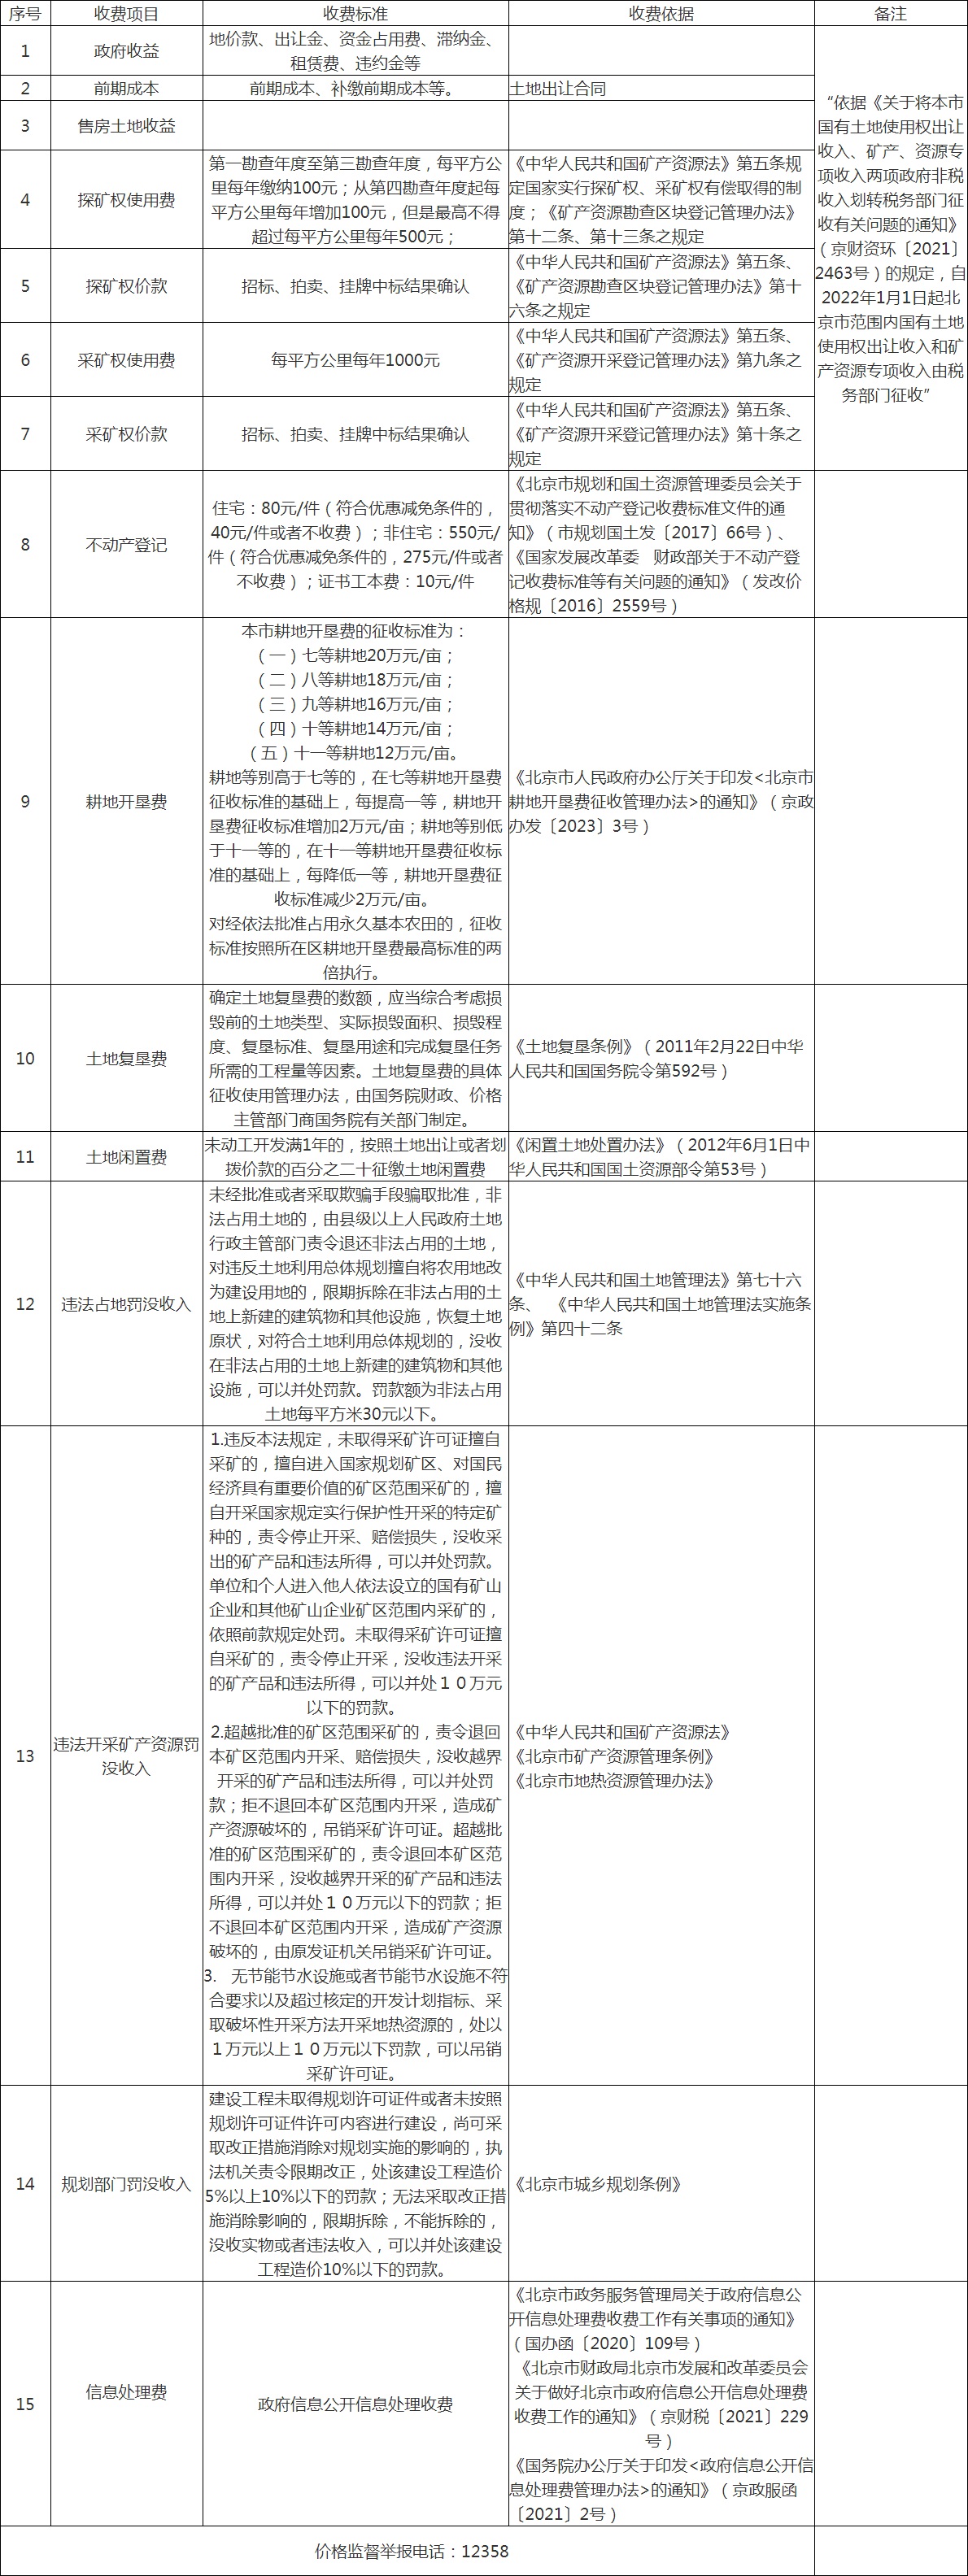 涉企收费项目公示表_涉企收费_北京市规划和自然资源委员会.jpg